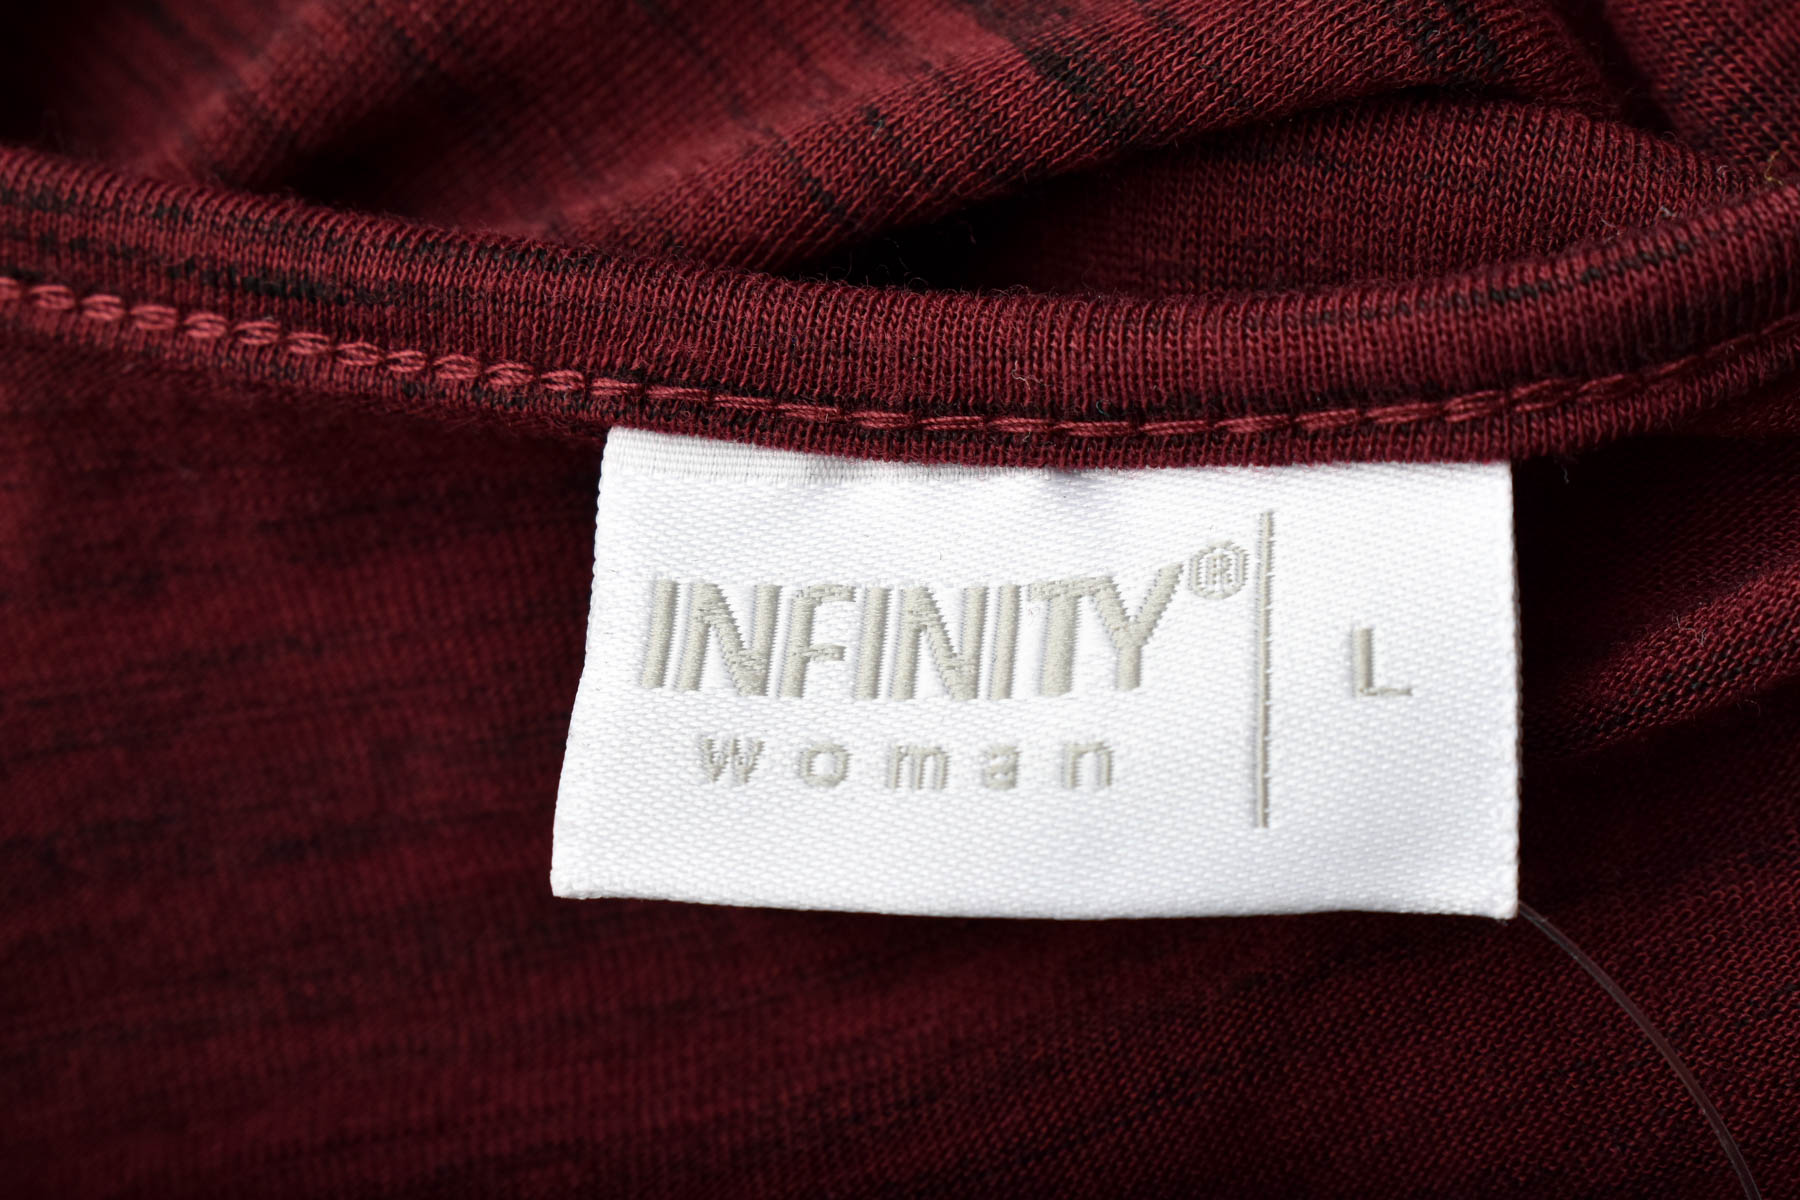 Γυναικεία μπλούζα - Infinity Woman - 2